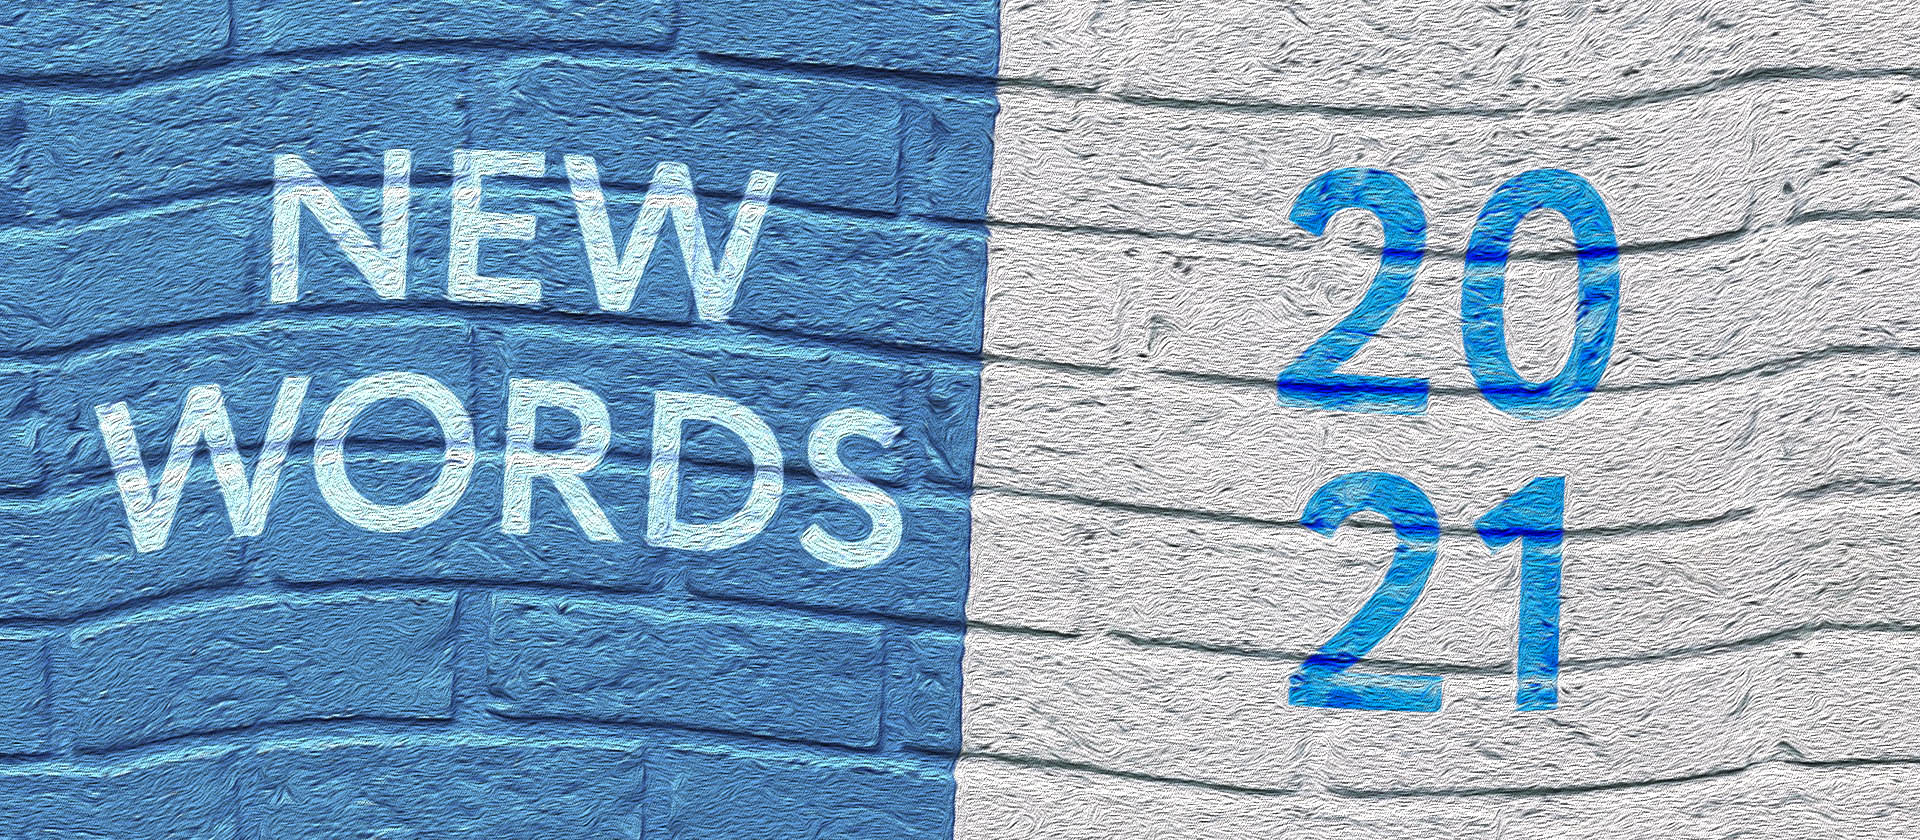 30 новых слов в английском языке, внесенных в словари в 2021 году